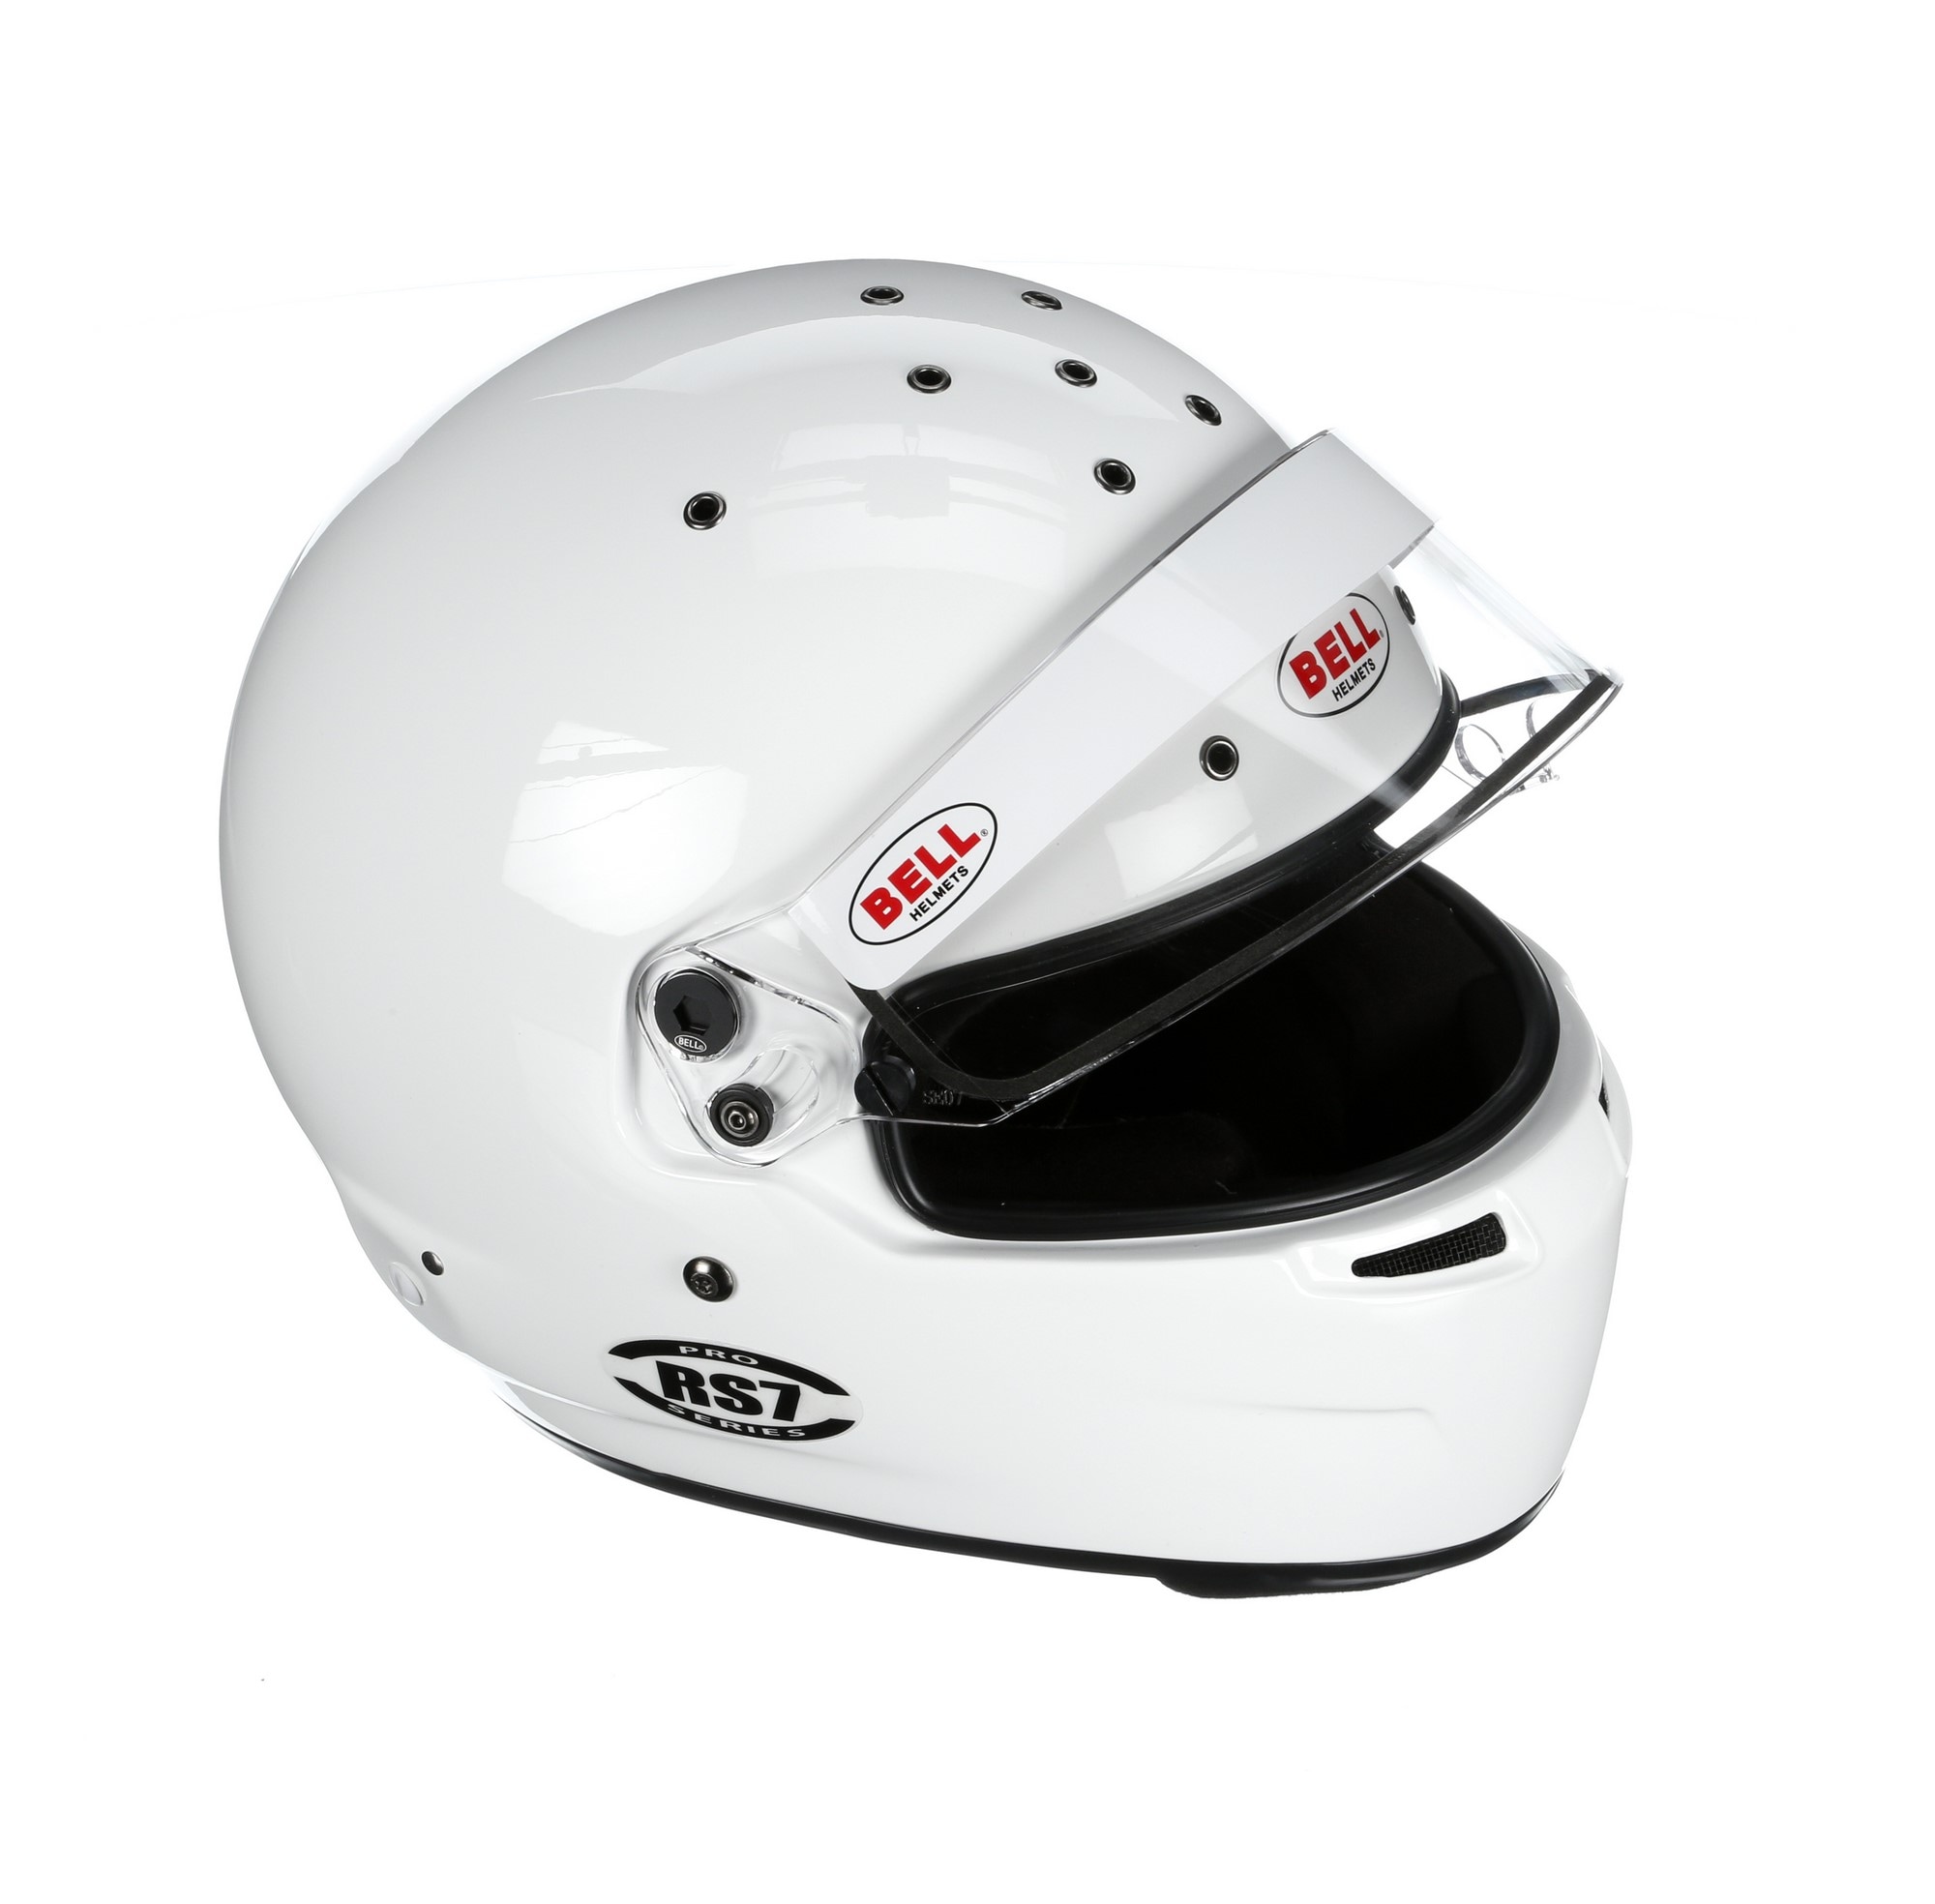 Helmet Bell RS7 Pro Hans White